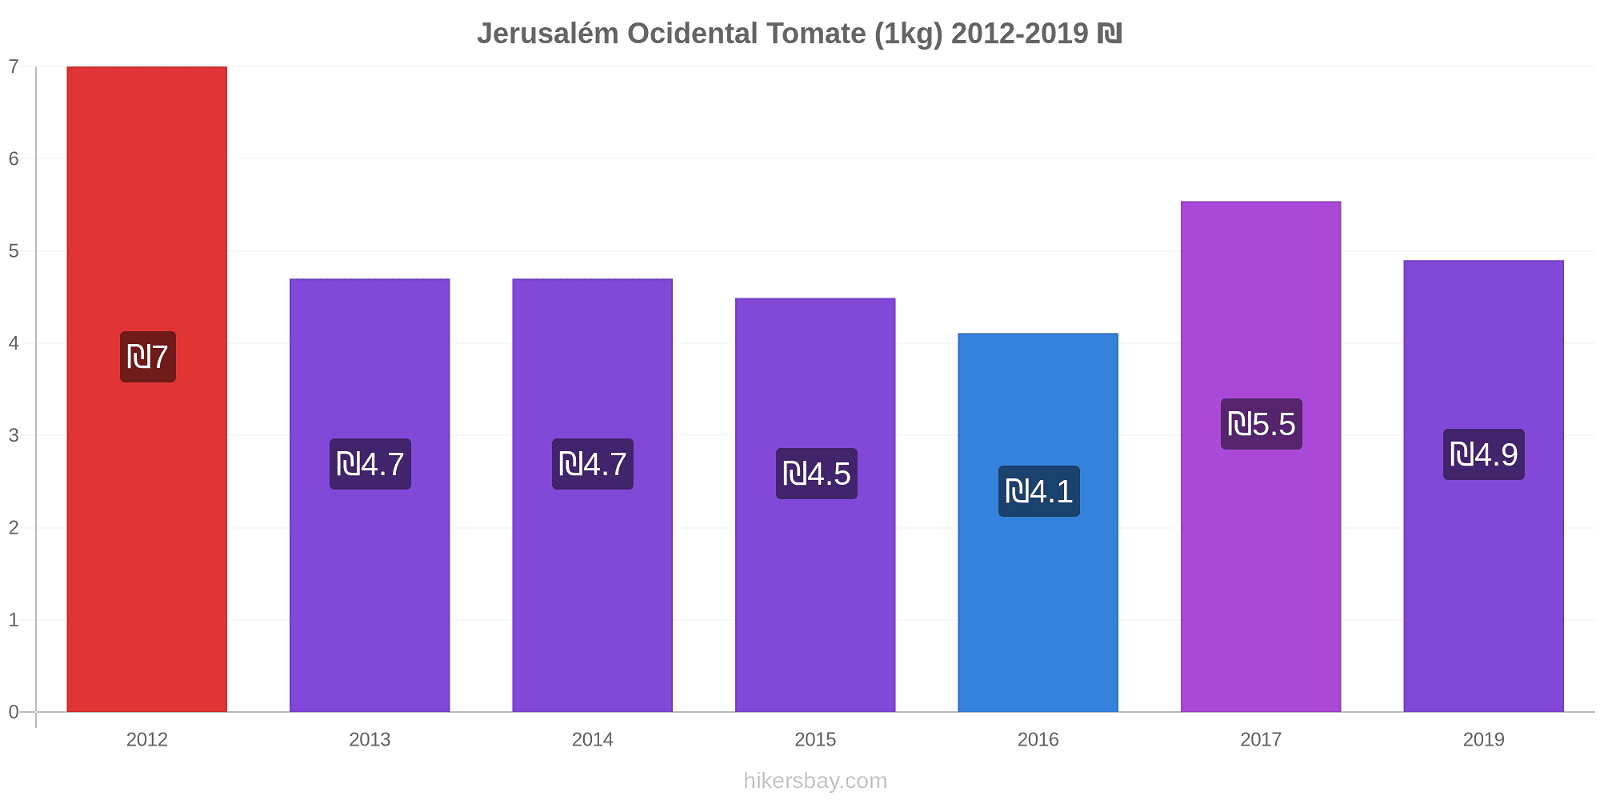 Jerusalém Ocidental variação de preço Tomate (1kg) hikersbay.com